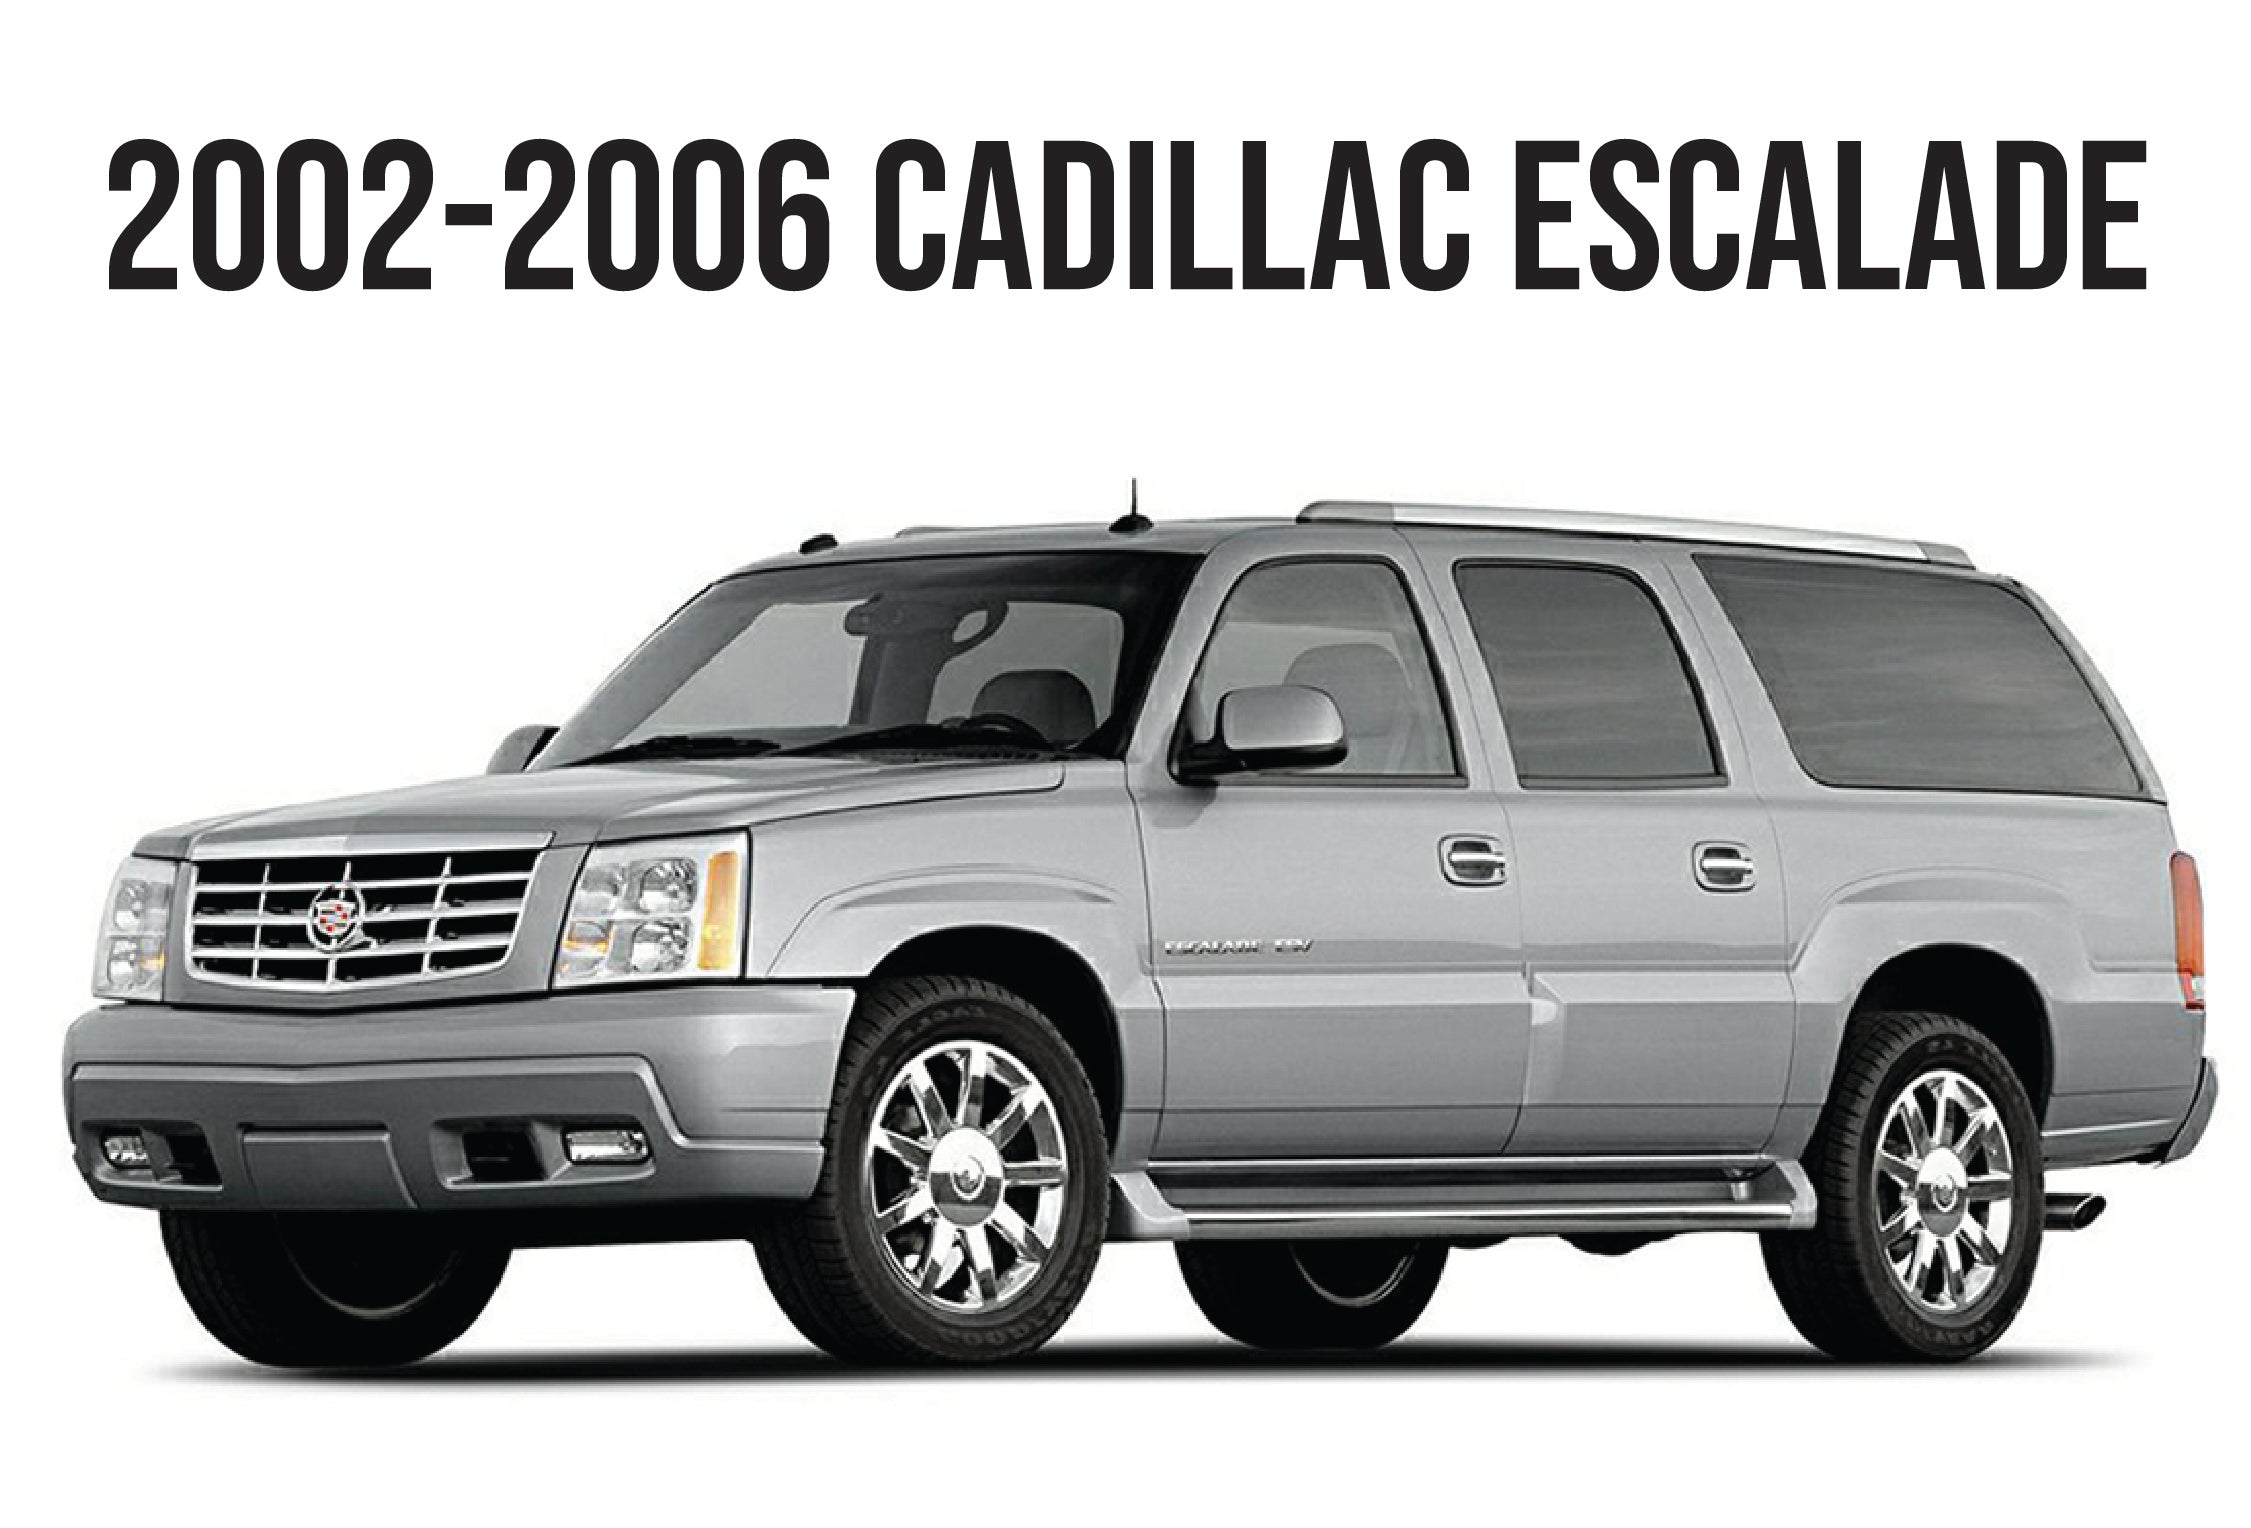 2002-2006 CADILLAC ESCALADE-Unique Style Racing